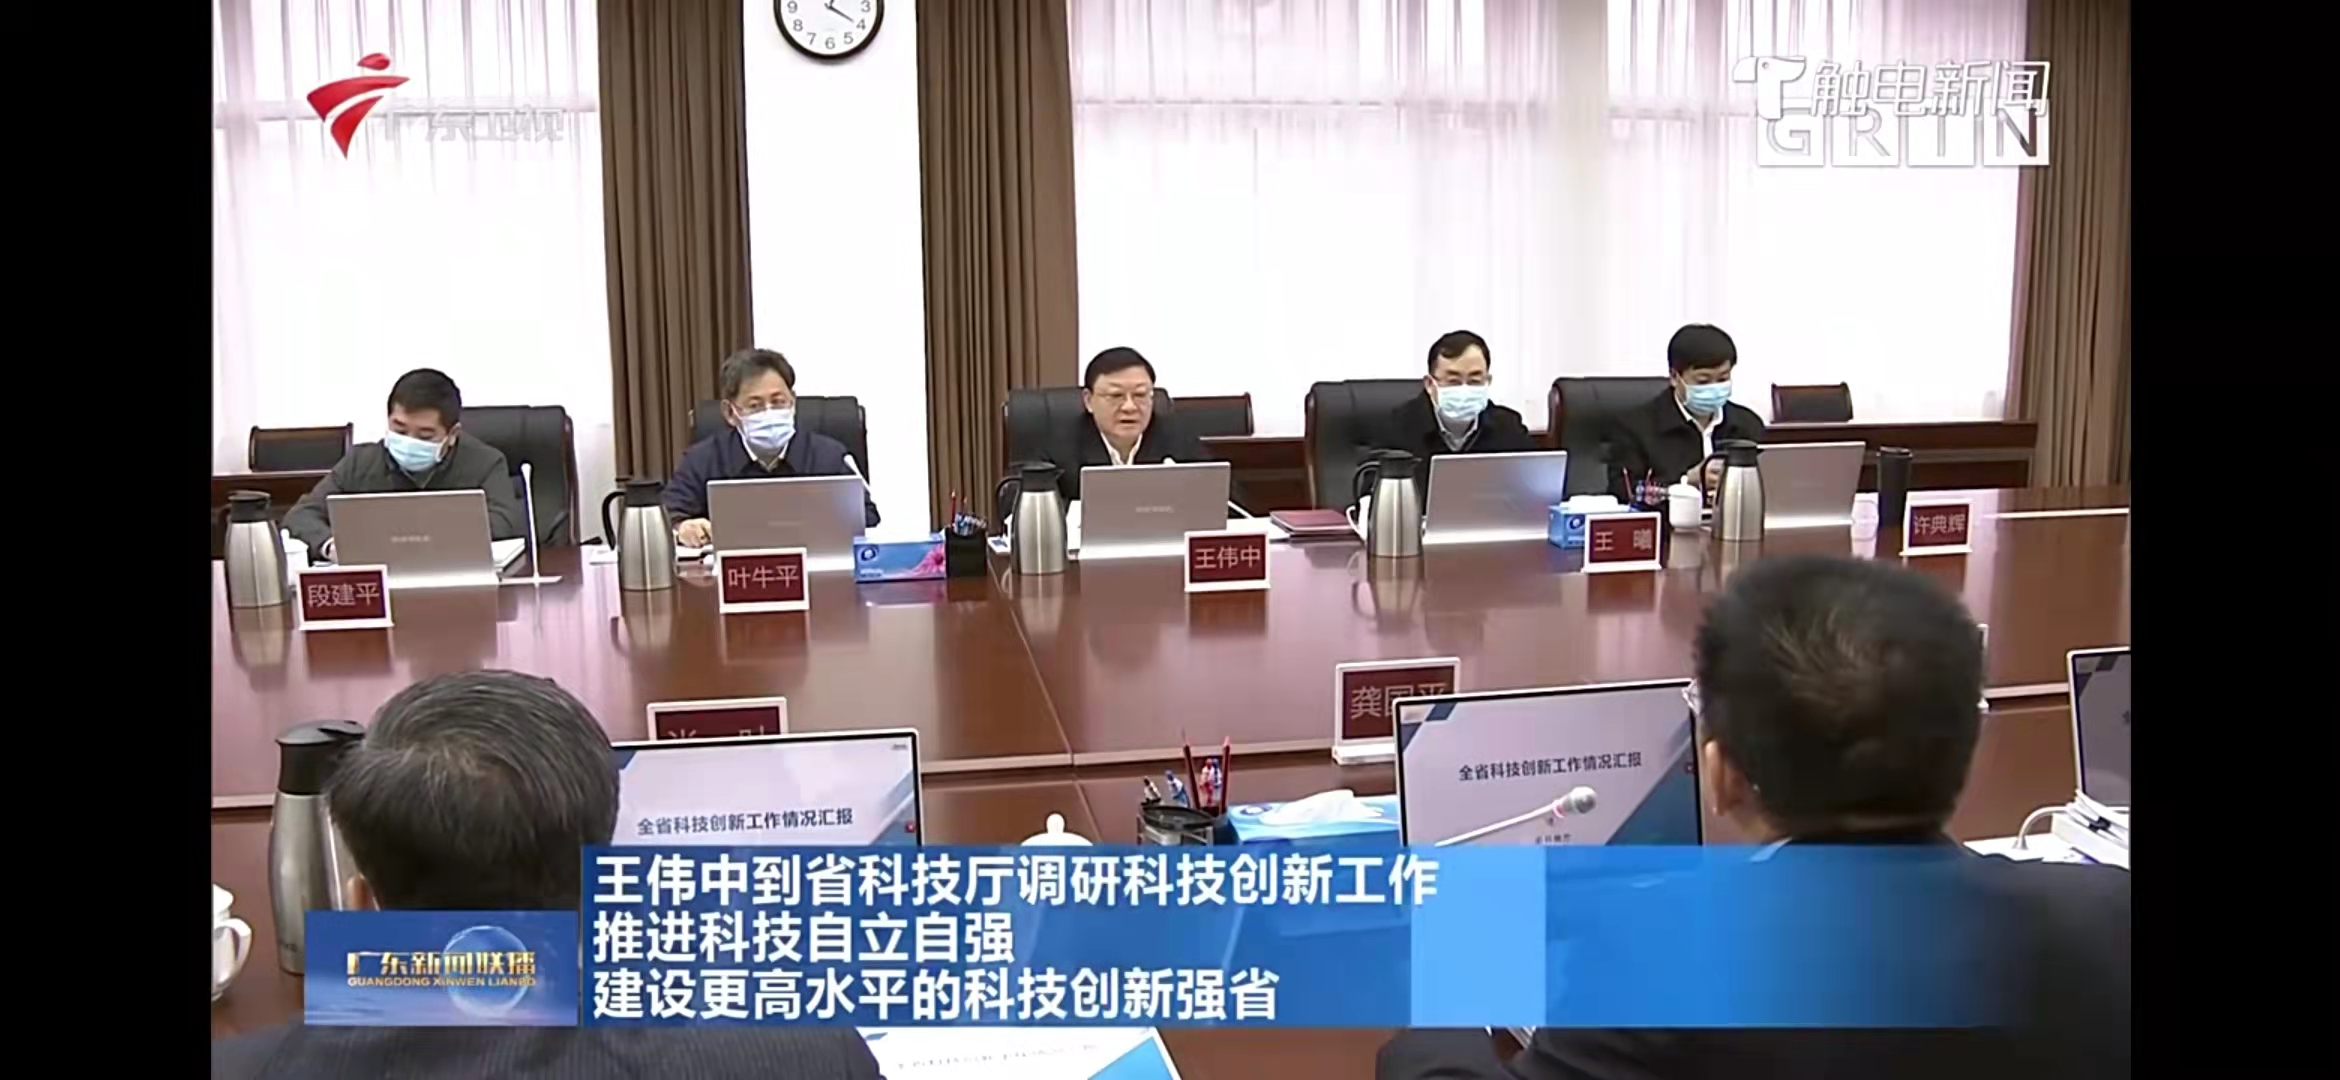 广东省省长在科技创新工作会议中使用英飞纯国产无纸化会议系统